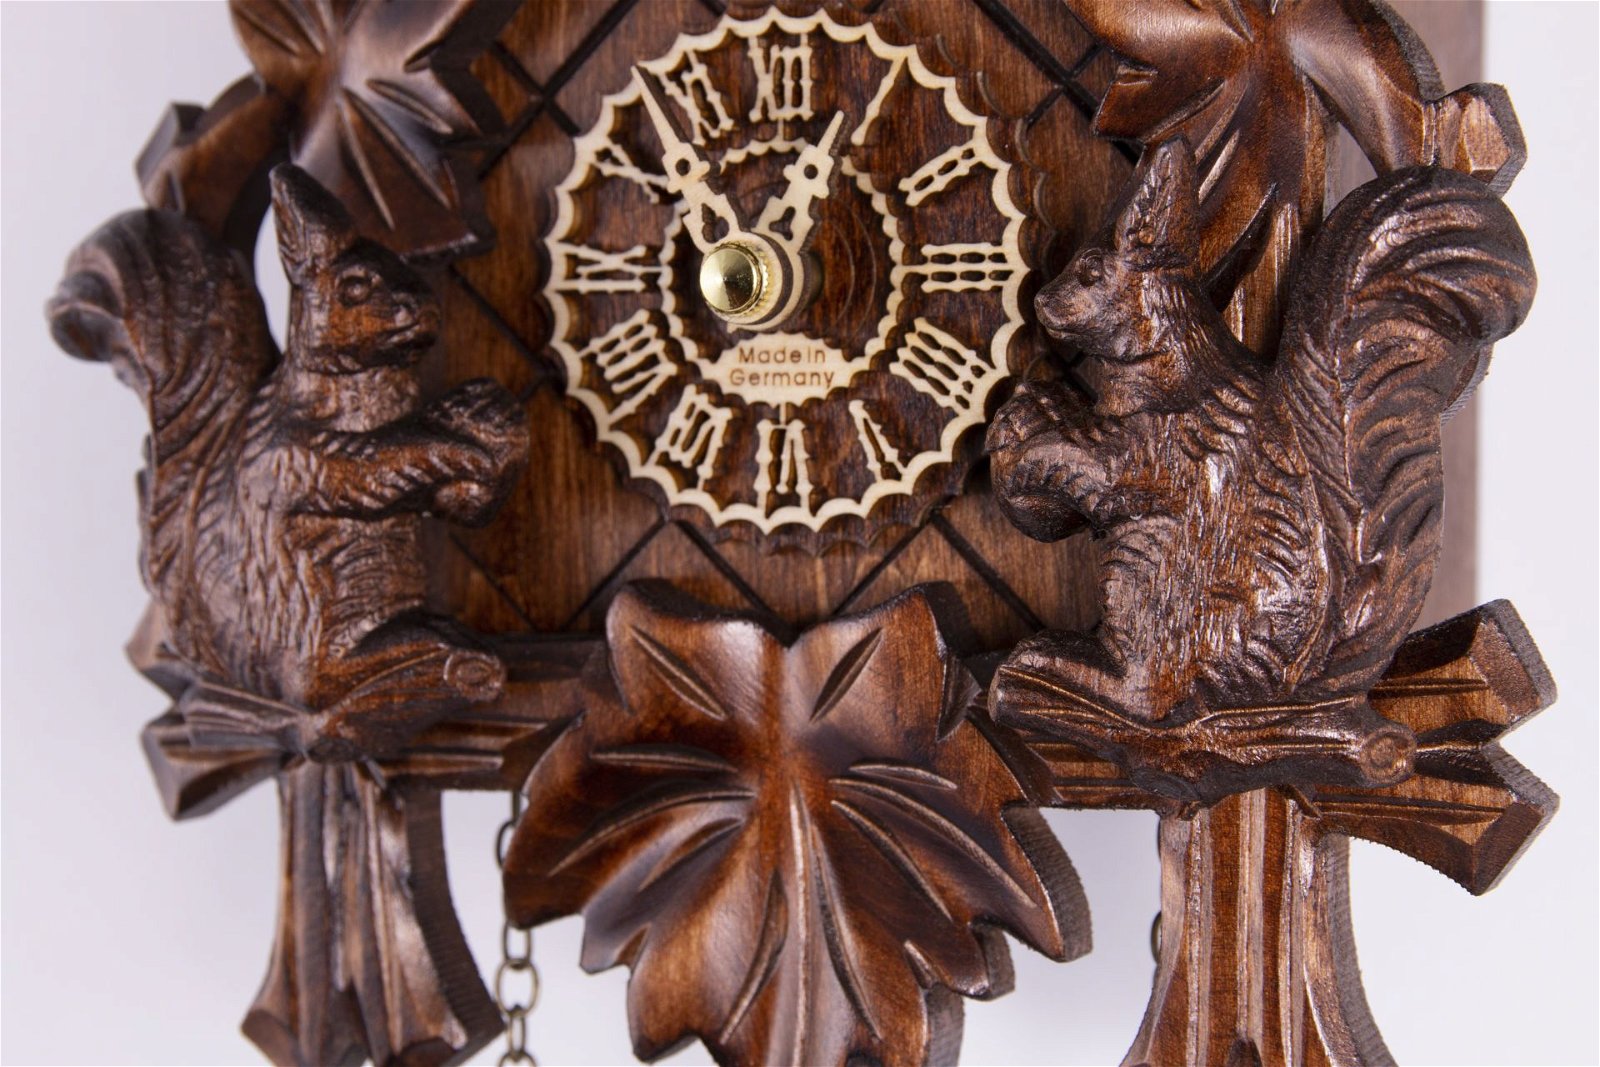 Kuckucksuhr geschnitzt Quarz-Uhrwerk 24cm von Trenkle Uhren